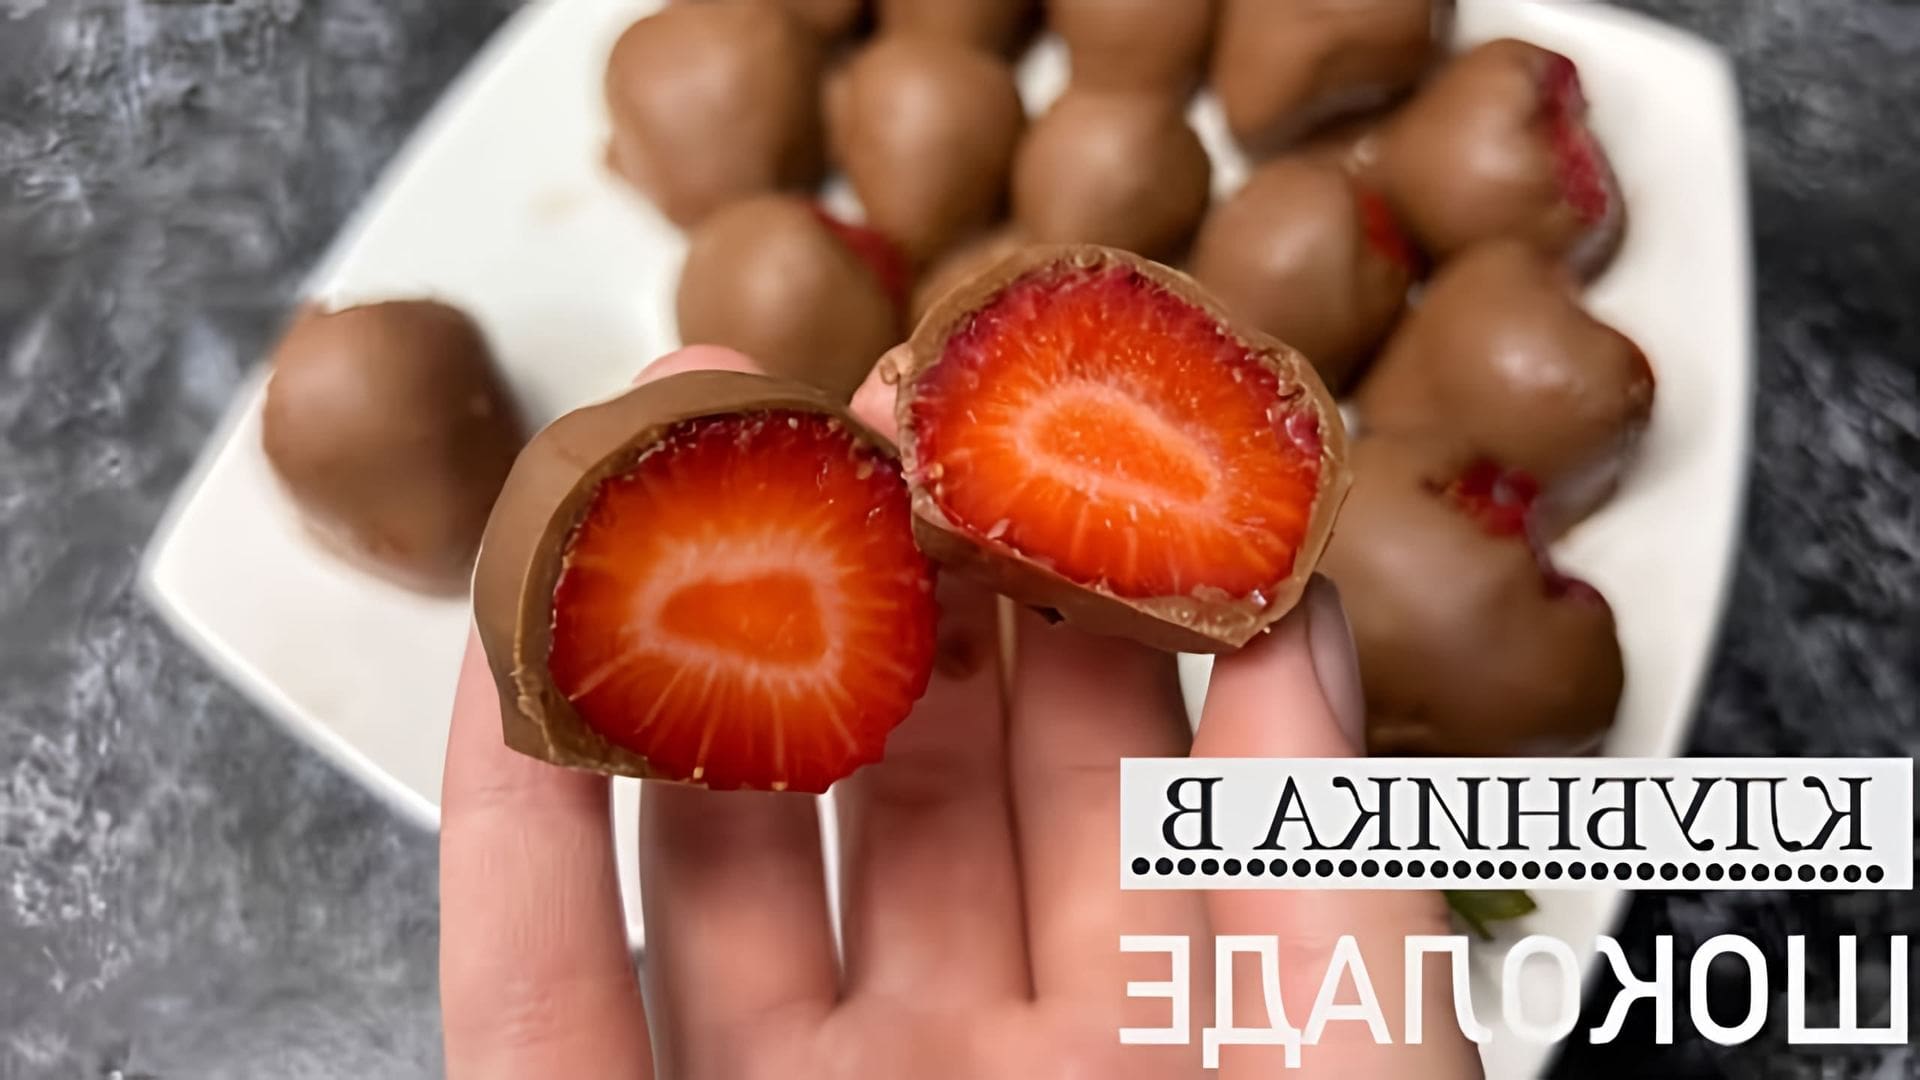 В этом видео-ролике будет рассказано о том, как приготовить клубнику в шоколаде, используя секреты темперирования шоколада